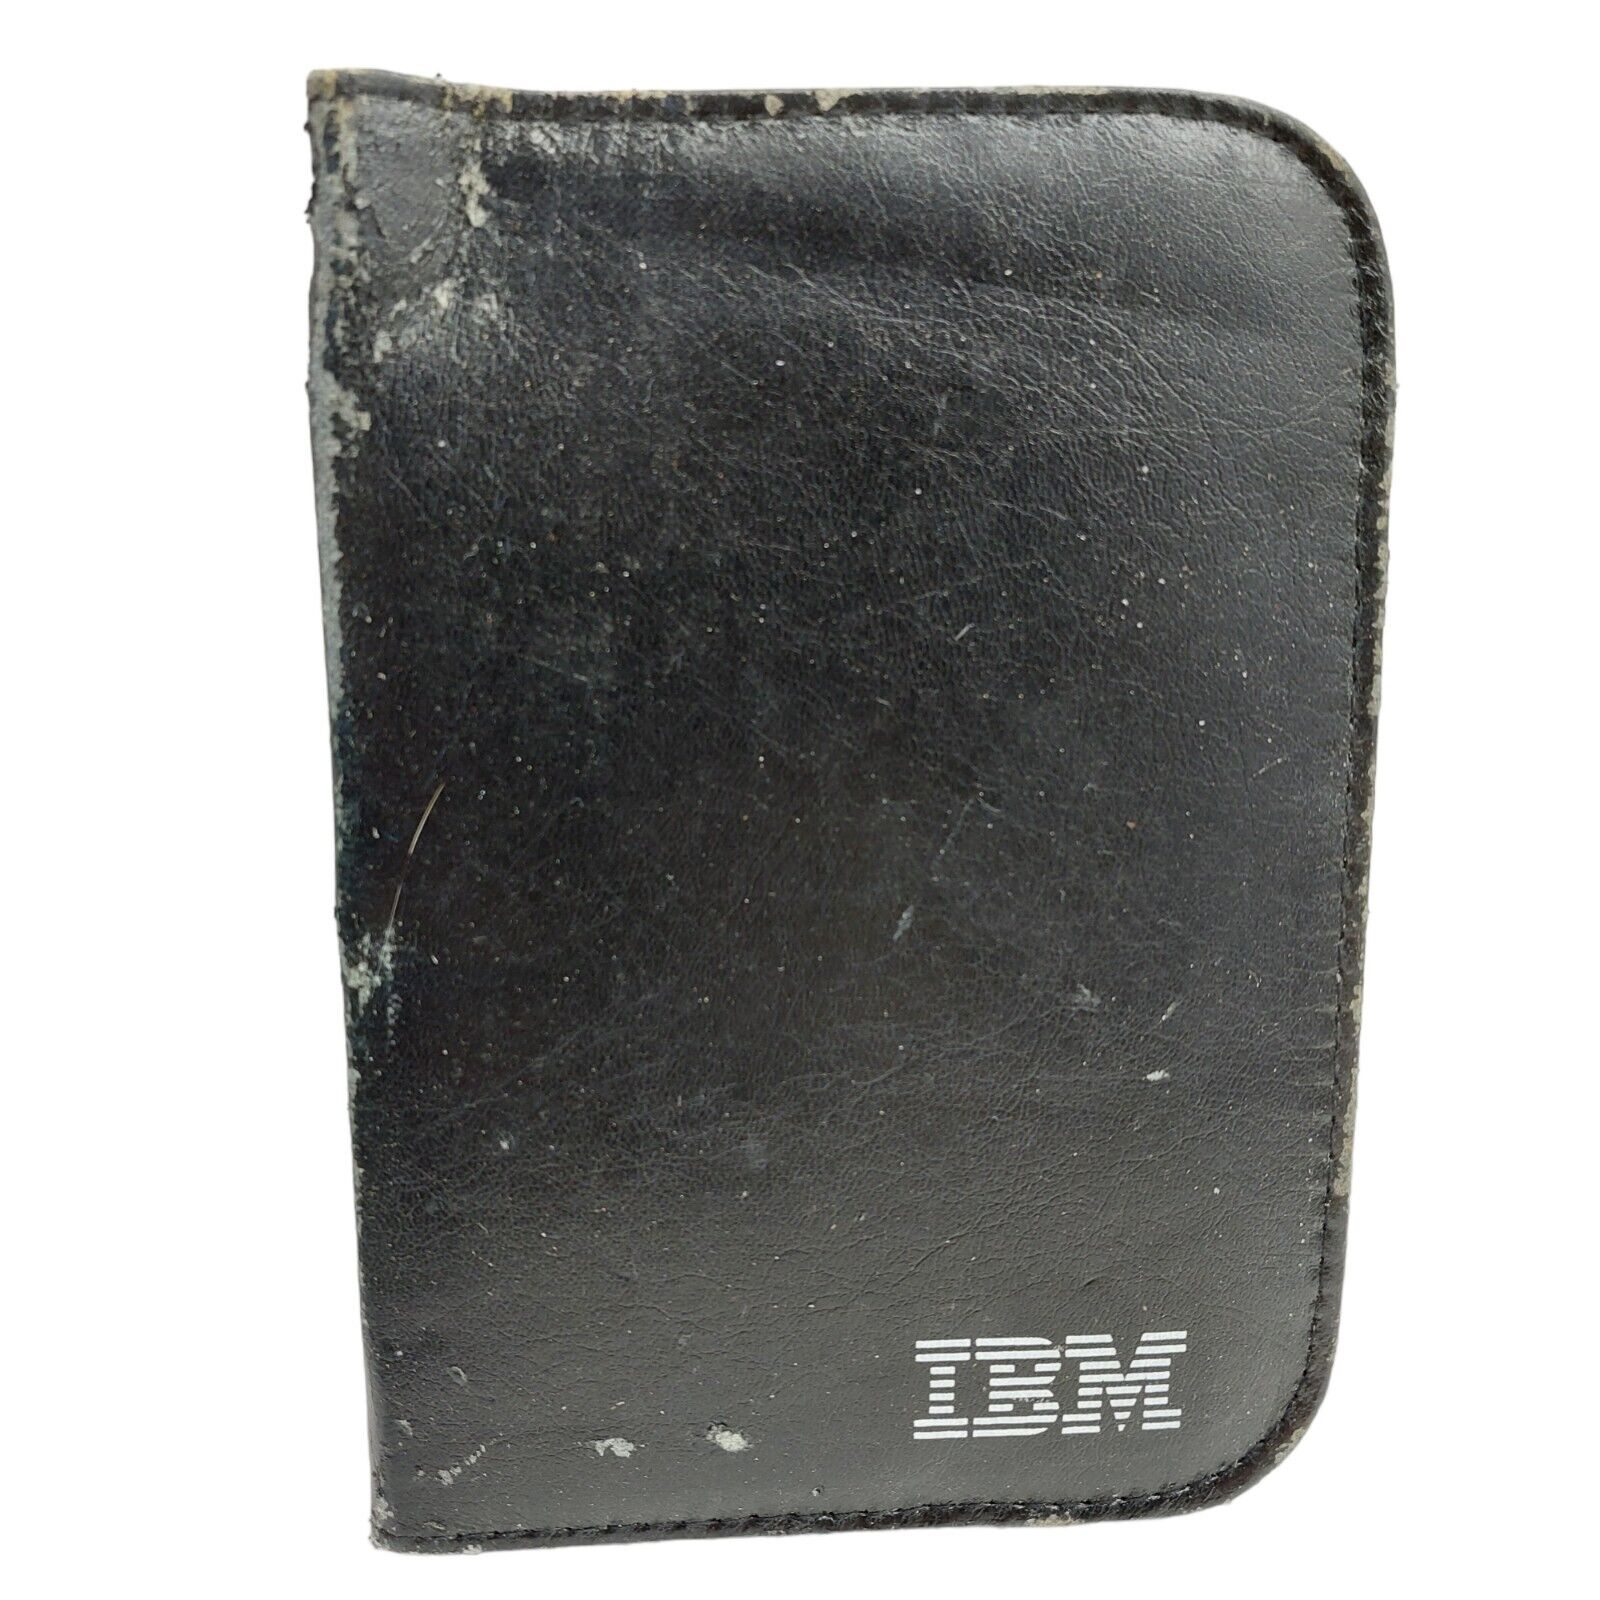 Vintage IBM Work Kit stapler remover staples scissors ruler etc